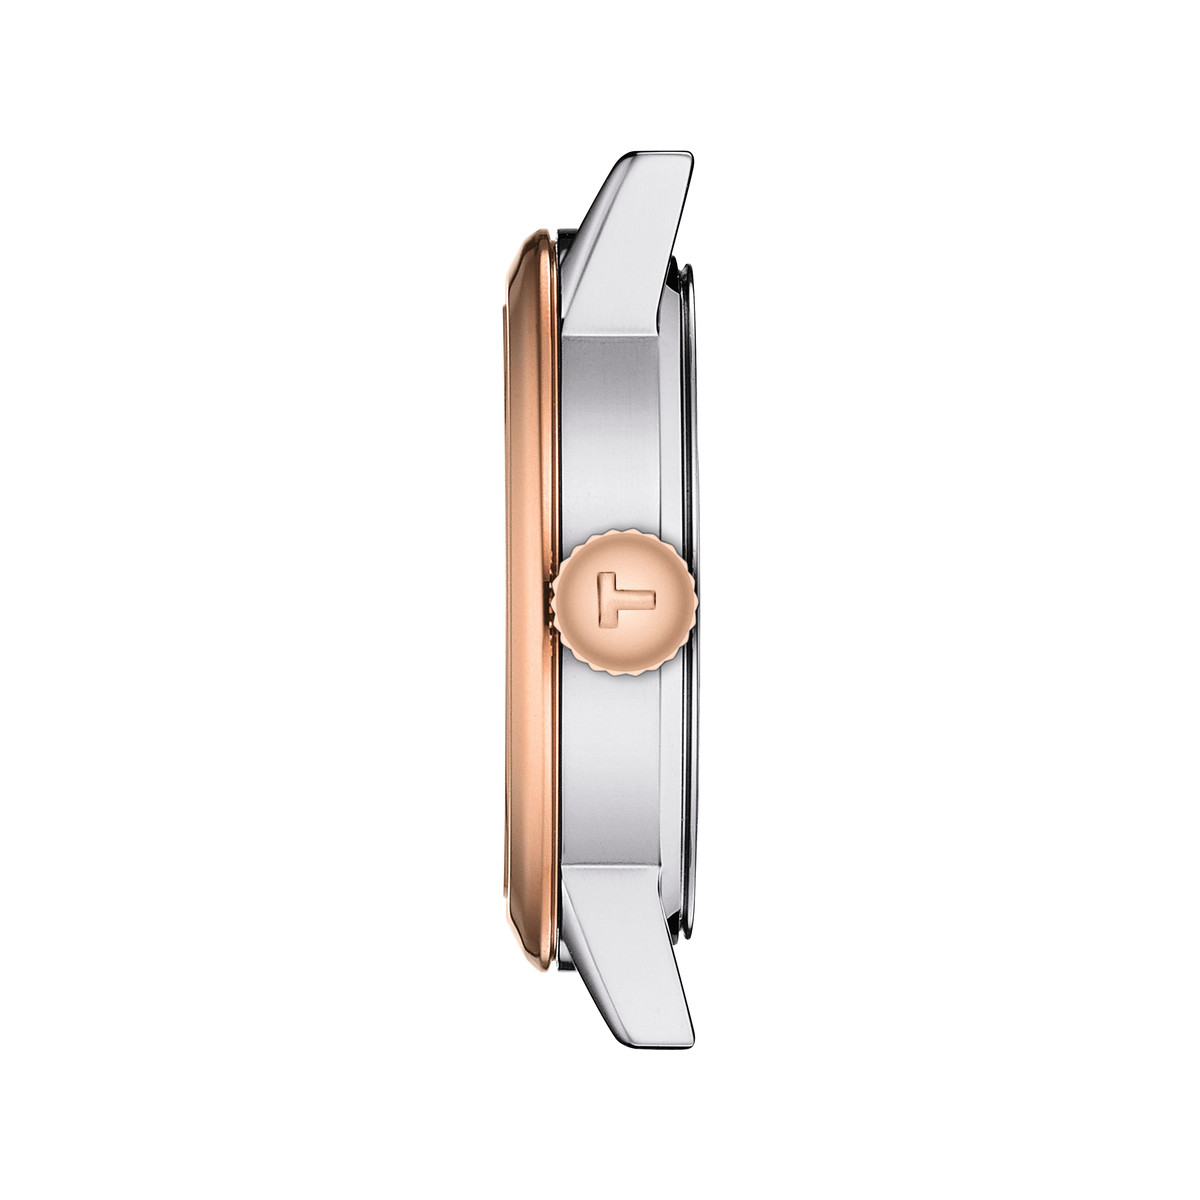 Montre TISSOT T-classic femme bracelet acier inoxydable bicolore rose - vue 2